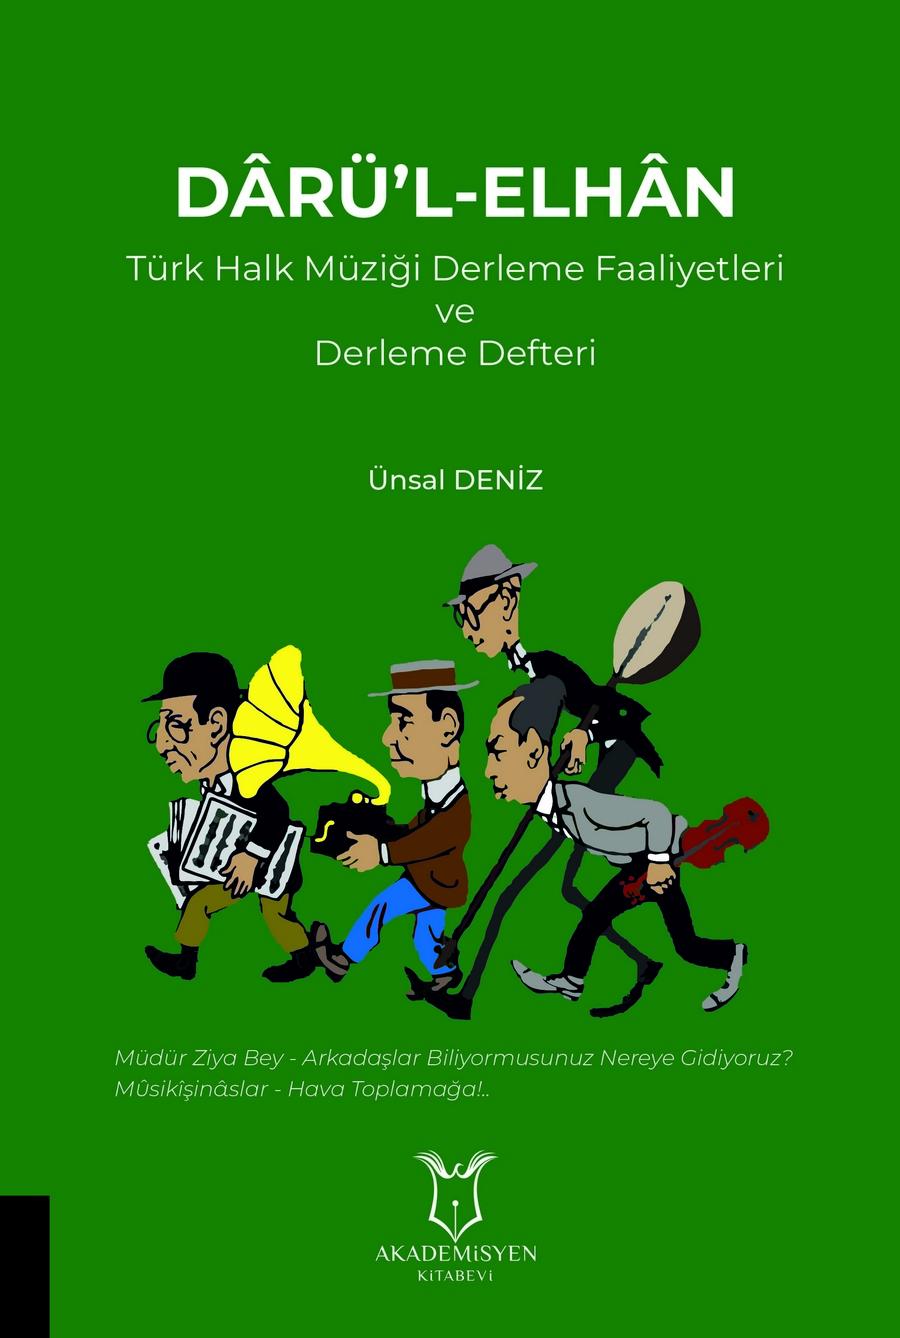 DÂRÜ’L-ELHÂN Türk Halk Müziği Derleme Faaliyetleri ve Derleme Defteri